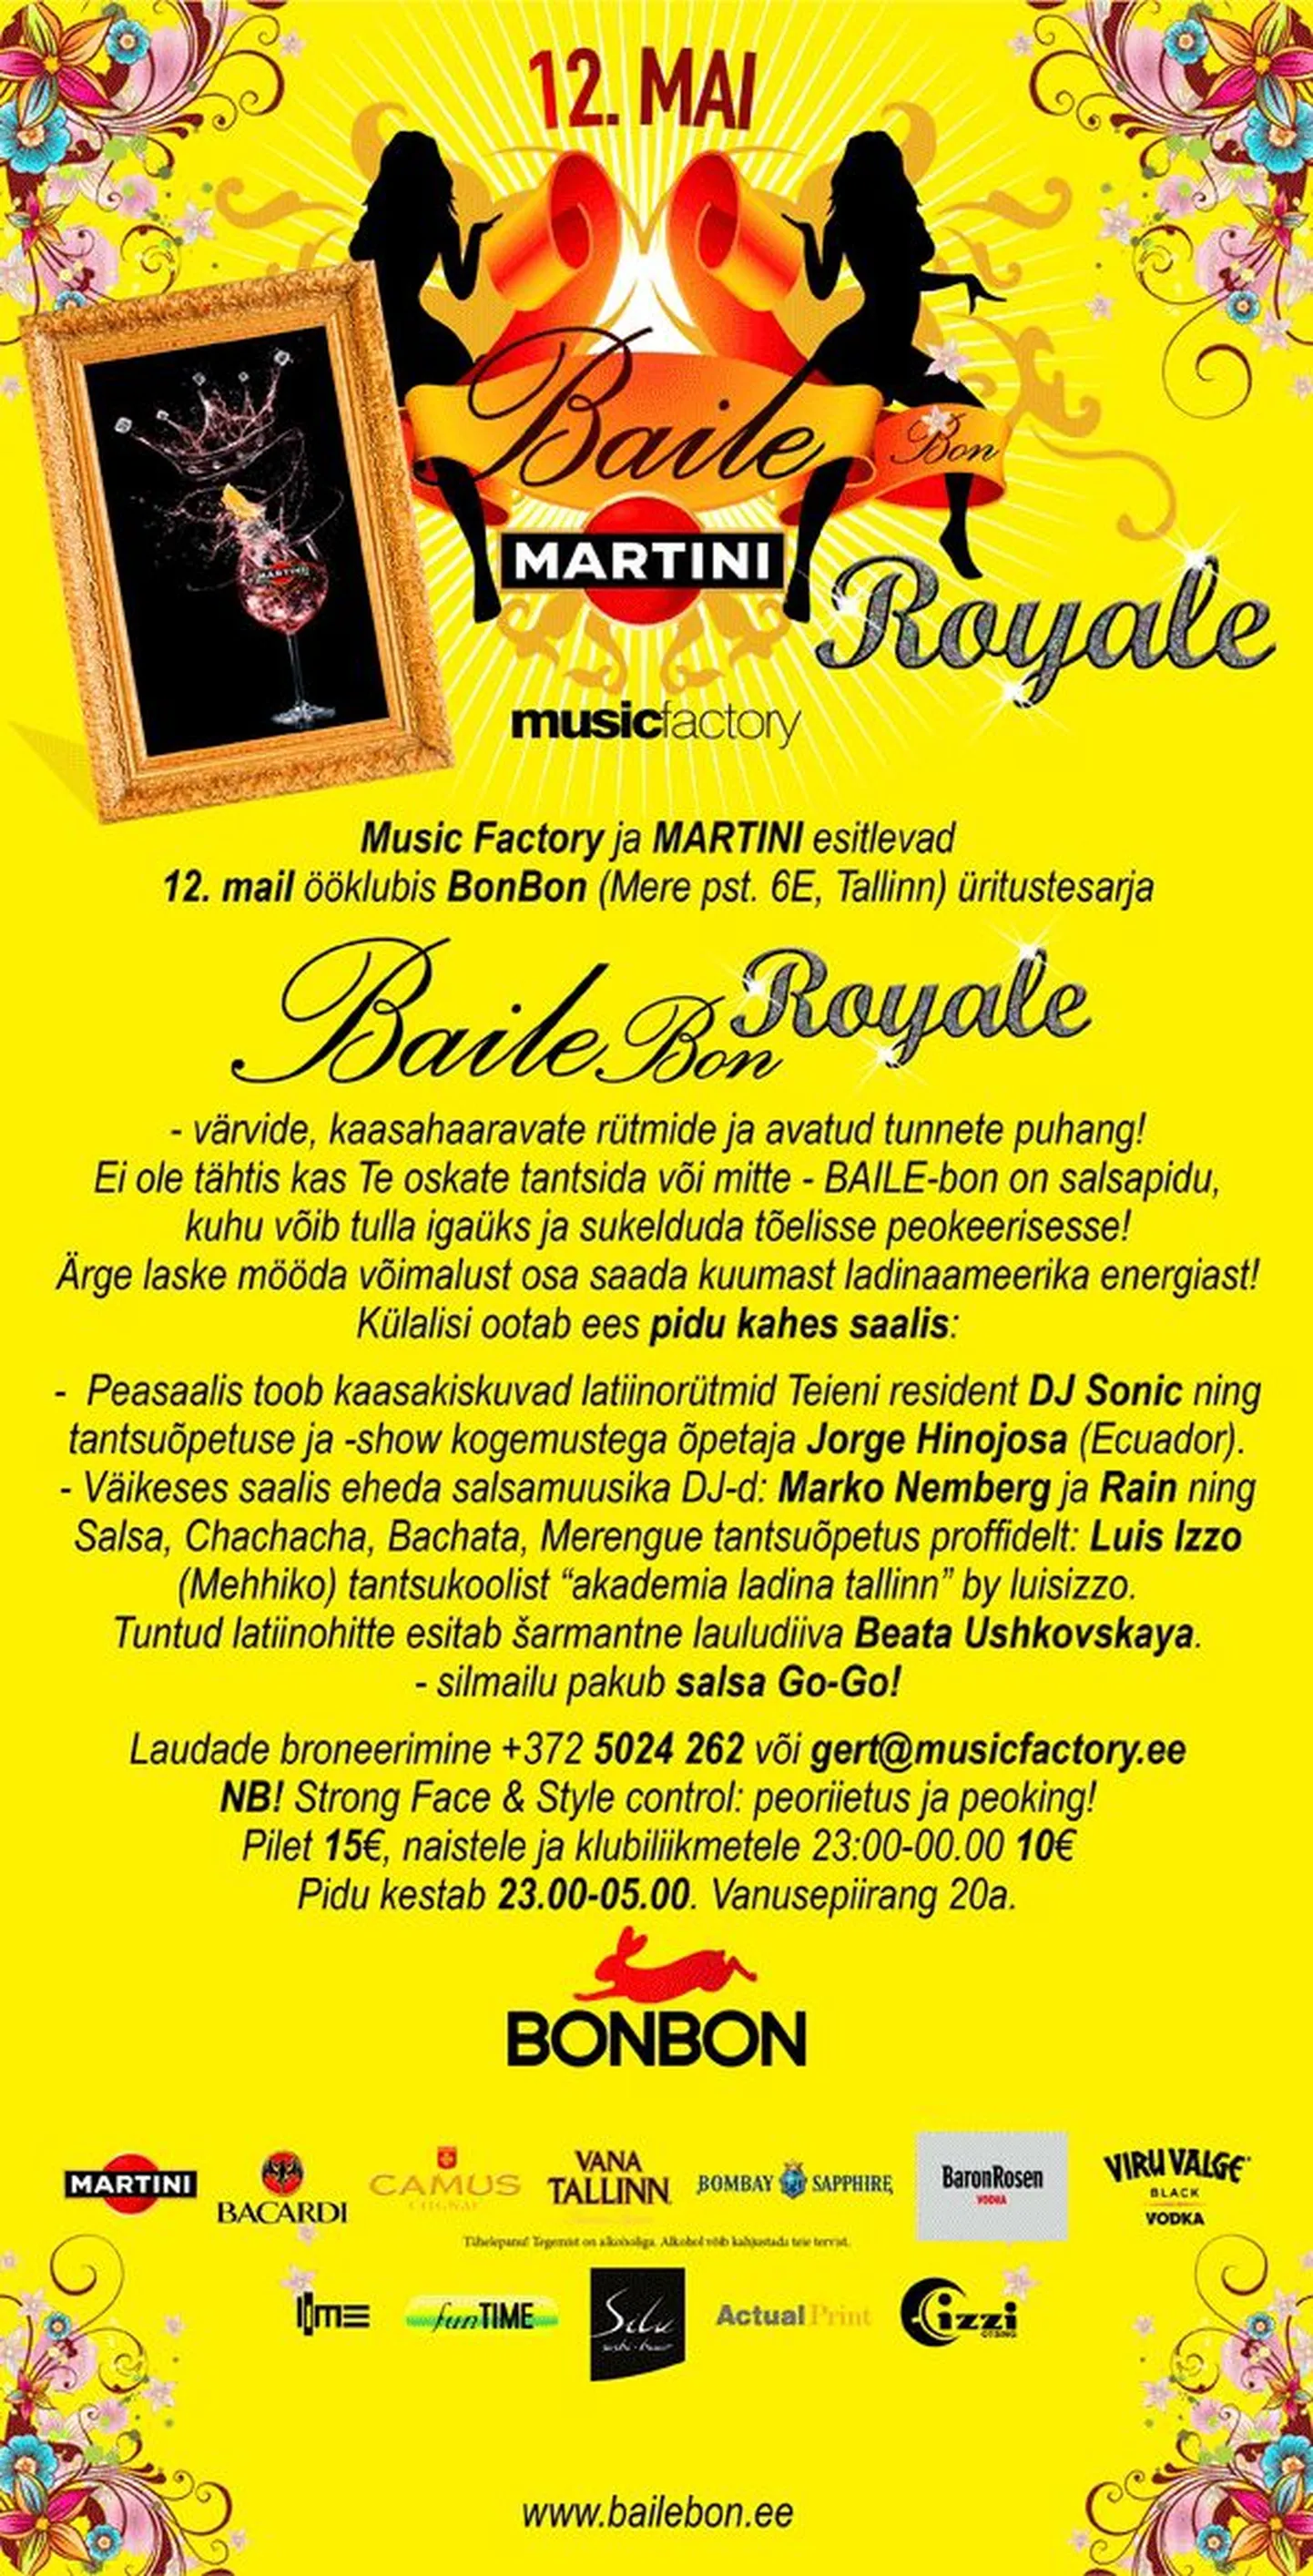 Laupäeval Baile-bon Royale!